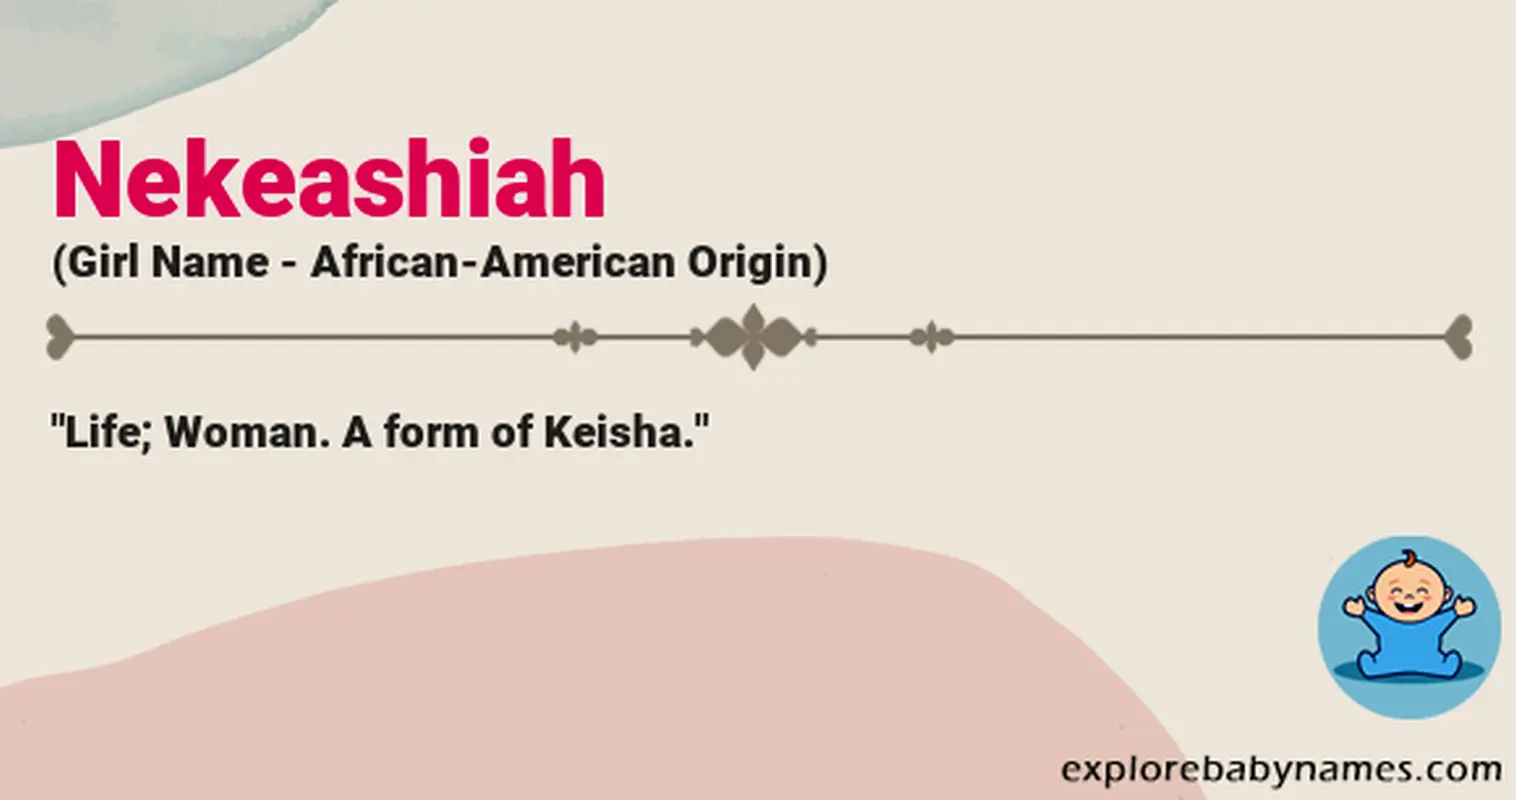 Meaning of Nekeashiah